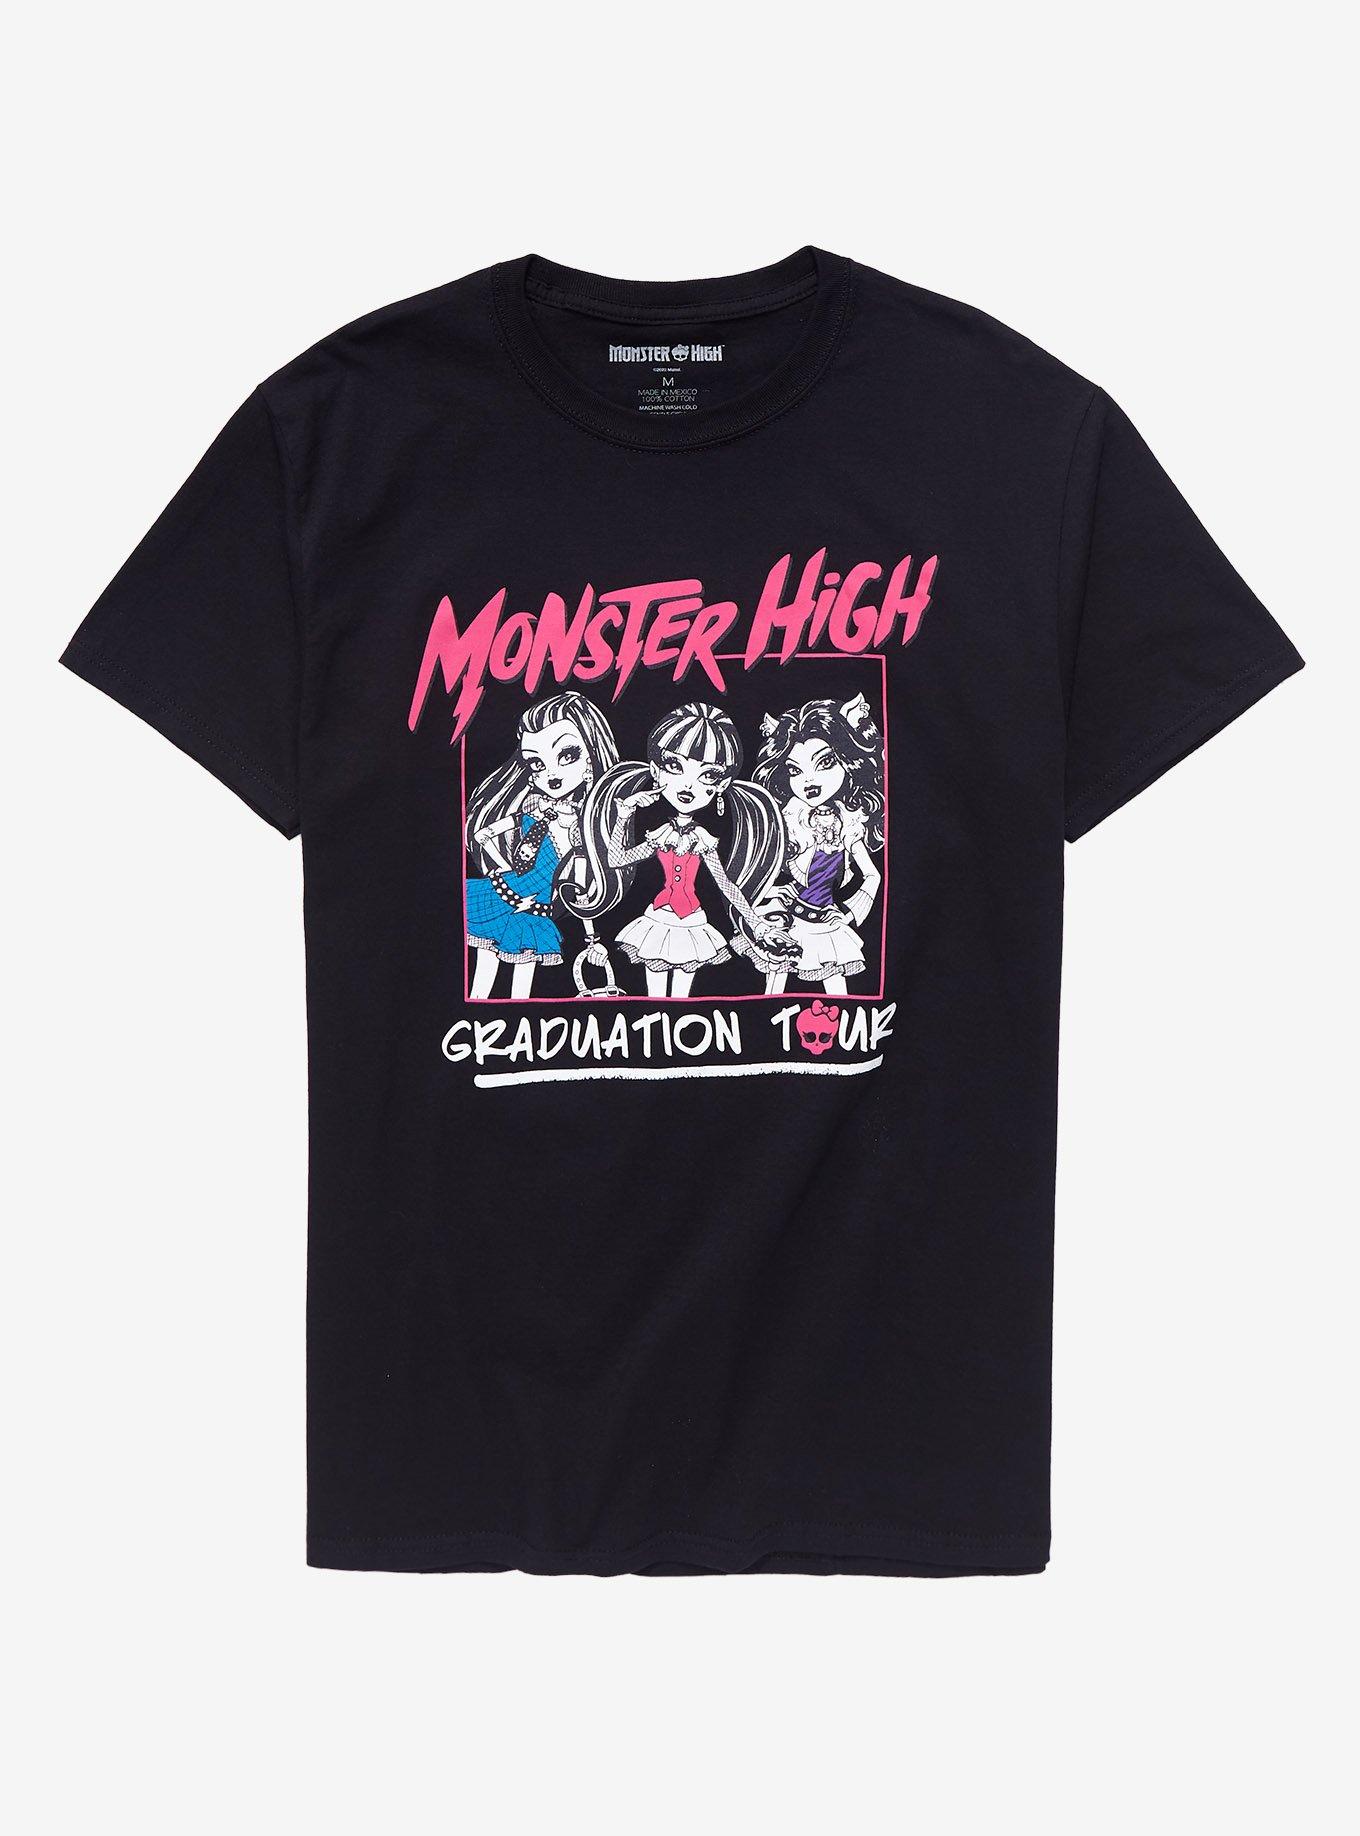 Monster High Graduation Tour Boyfriend Fit Girls T-Shirt | Hot Topic